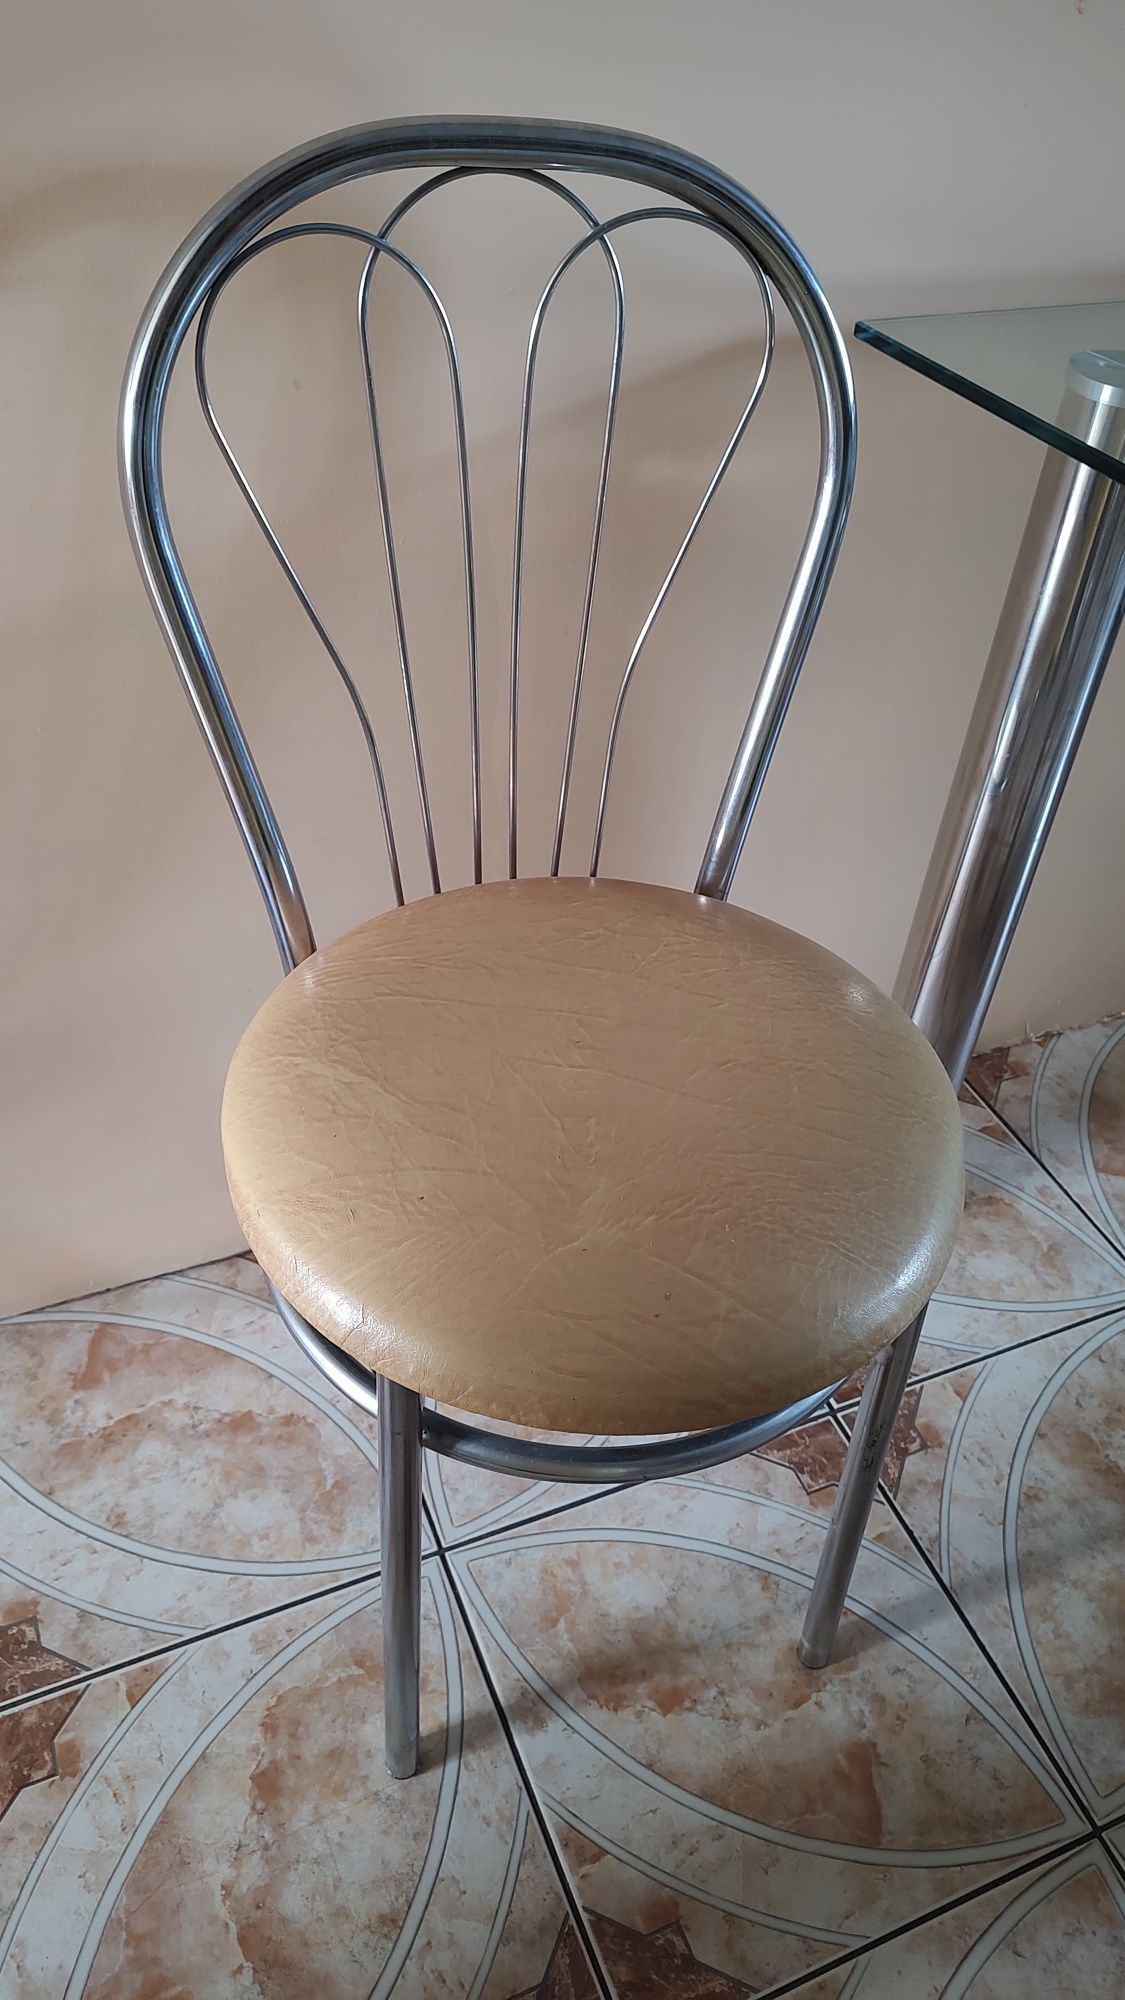 Stół z krzesłami zestaw